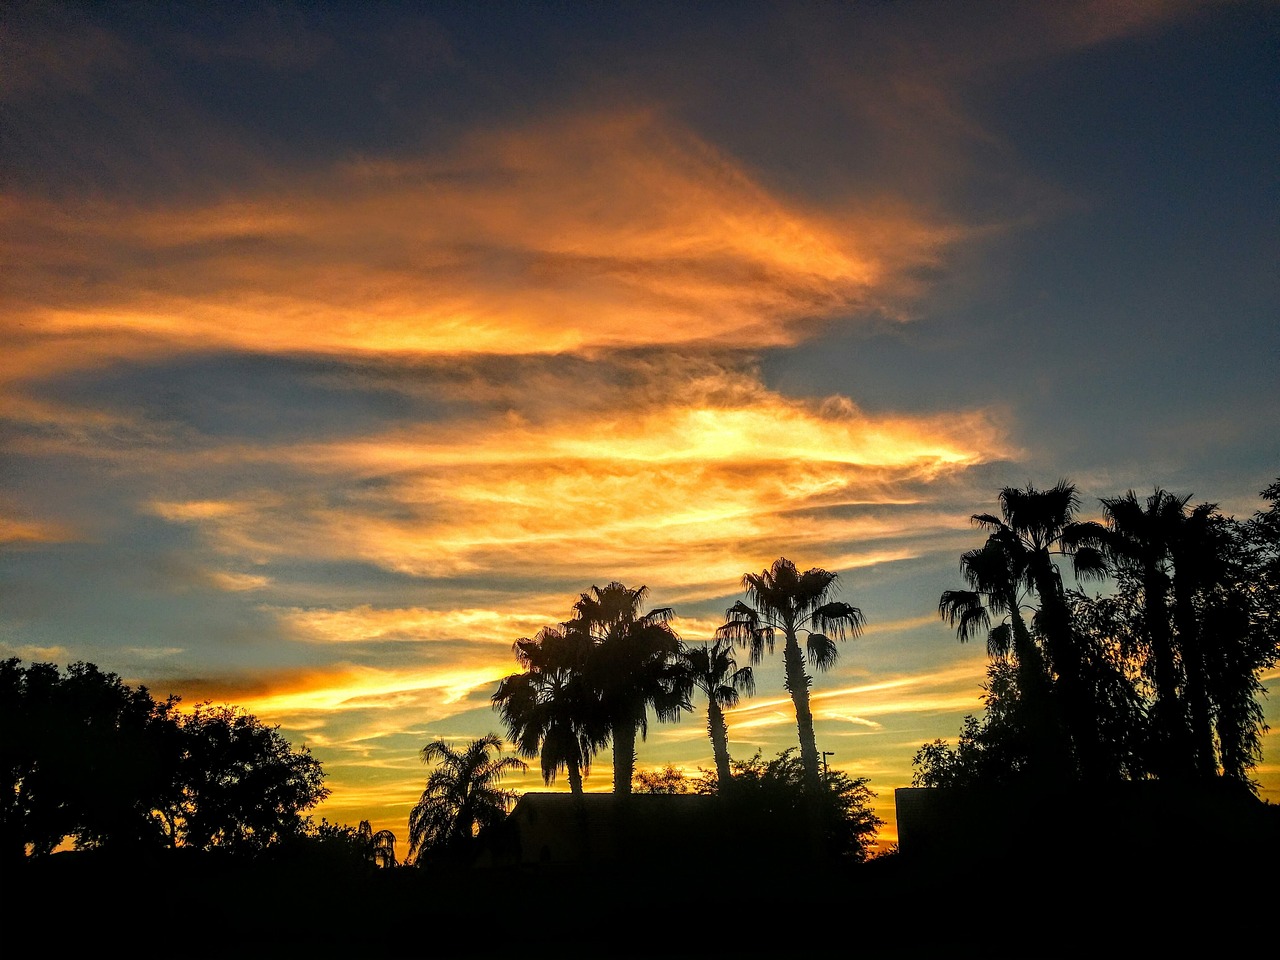 Arizona desert sunset landscape with palm trees